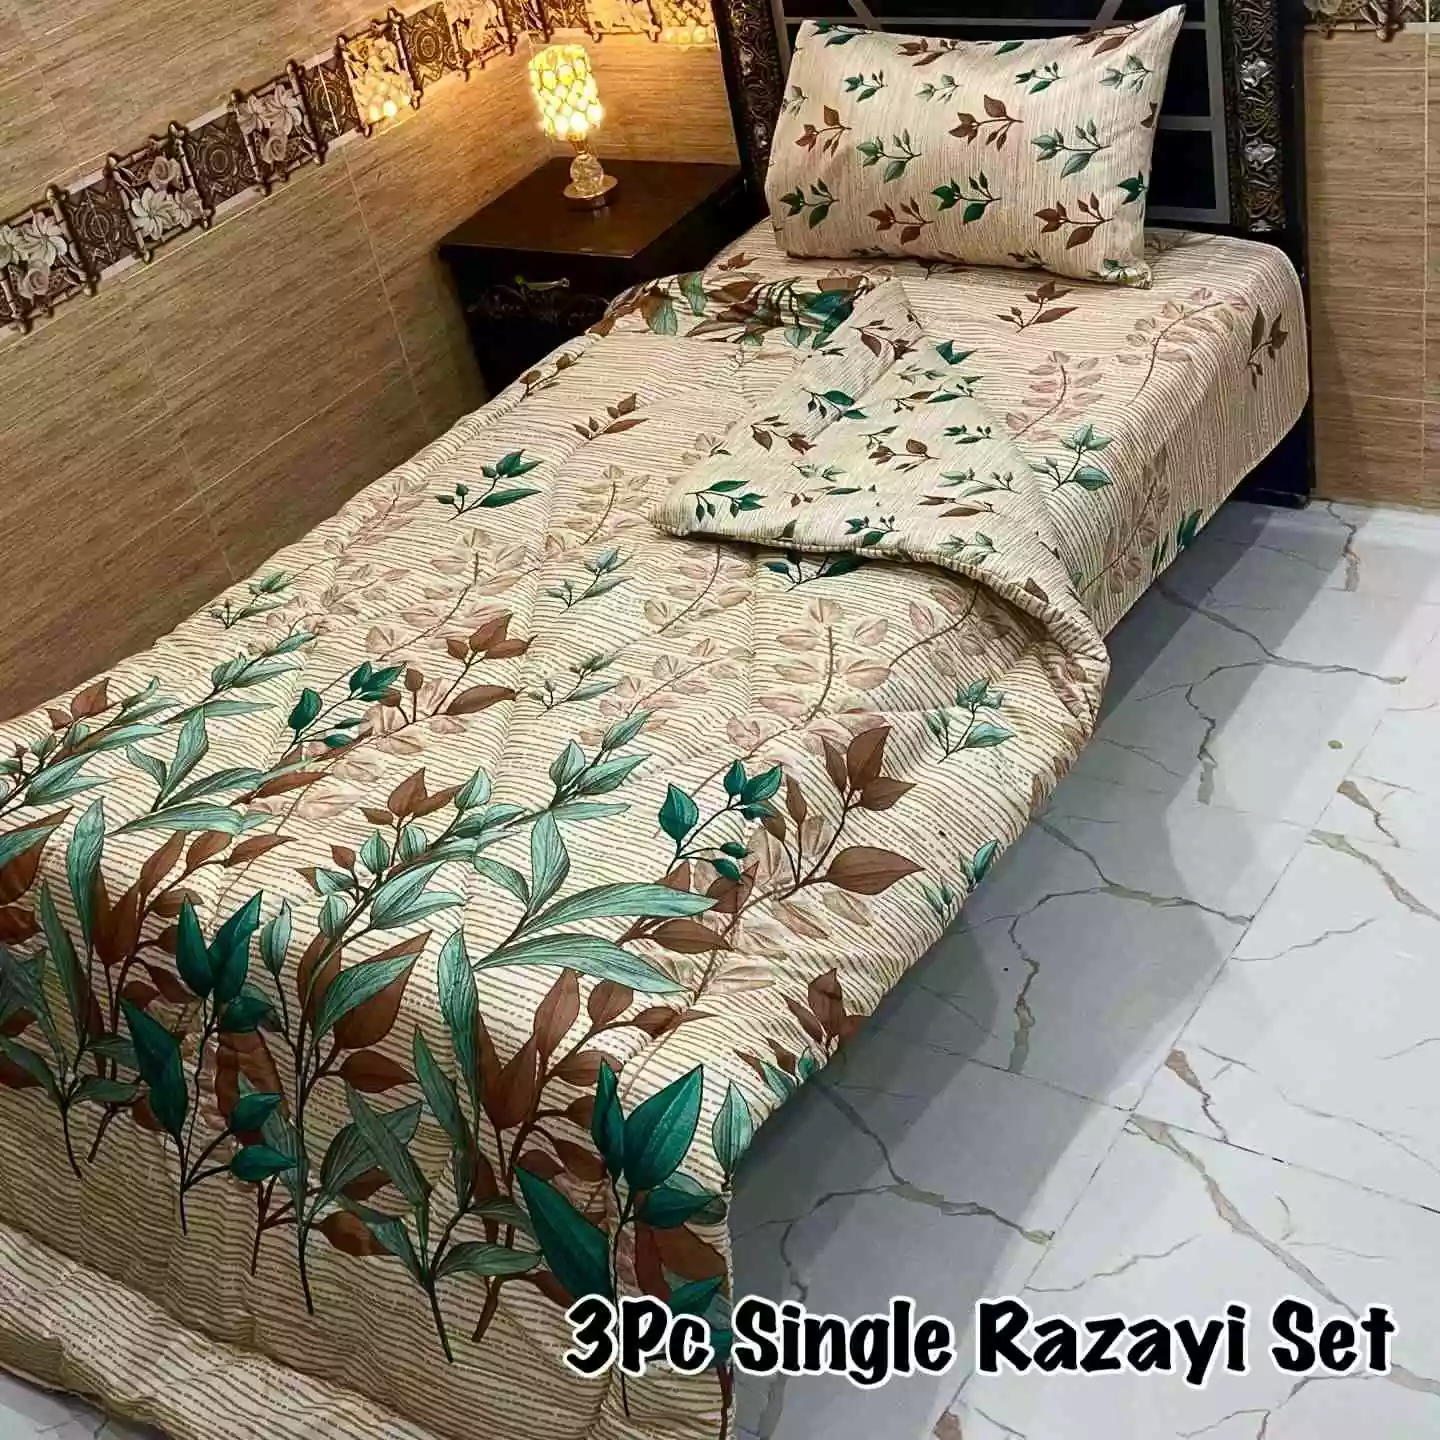 DF-VRSSB-14: DFY 3Pc Single Bed Vicky Razai Set